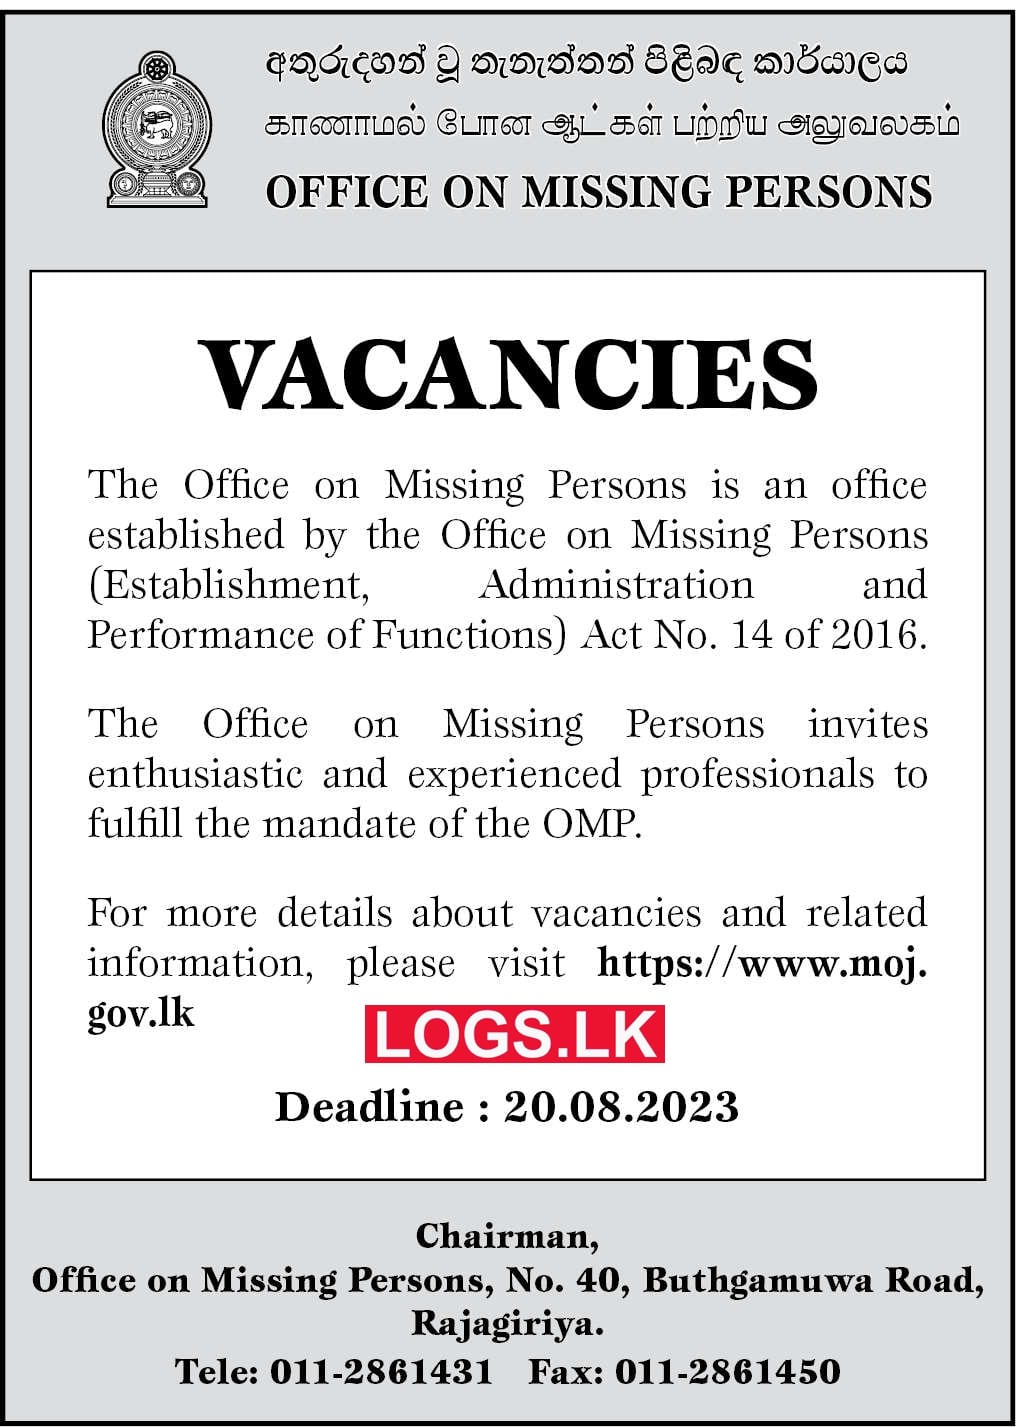 MOJ Job Vacancies Application